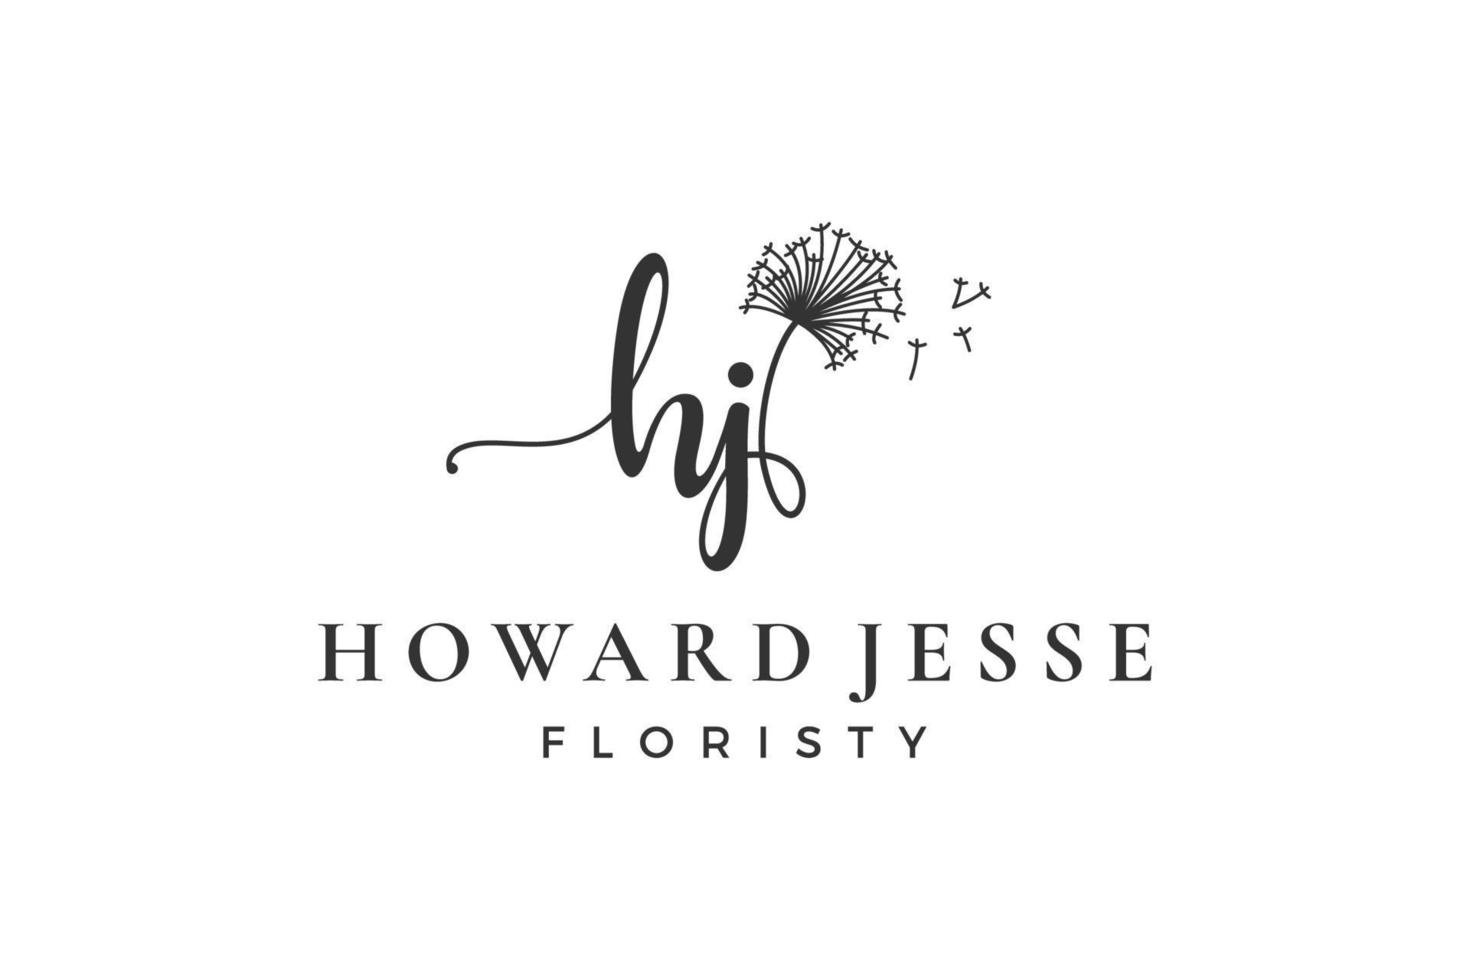 eerste brief hj h logo bloem, blad en schoonheid. bloemen en botanisch ontwerp sjabloon verzameling vector